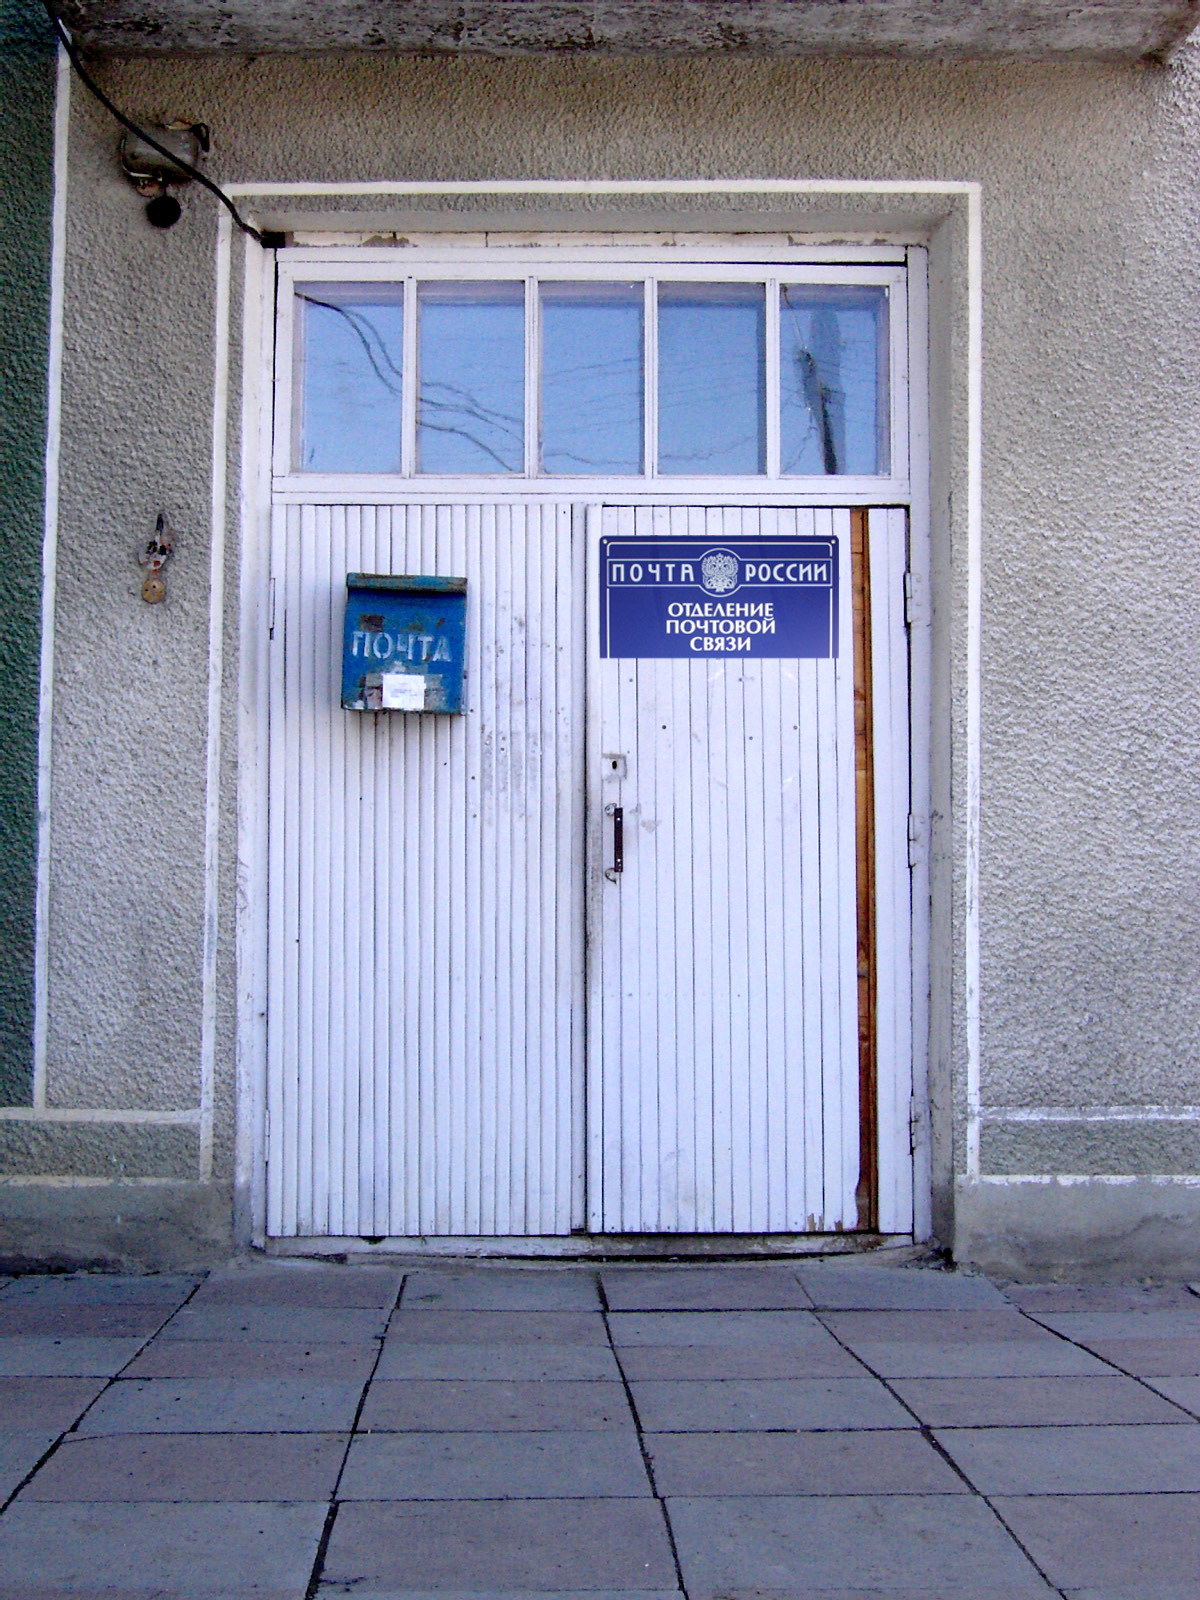 ФАСАД, отделение почтовой связи 633578, Новосибирская обл., Маслянинский р-он, Бажинск